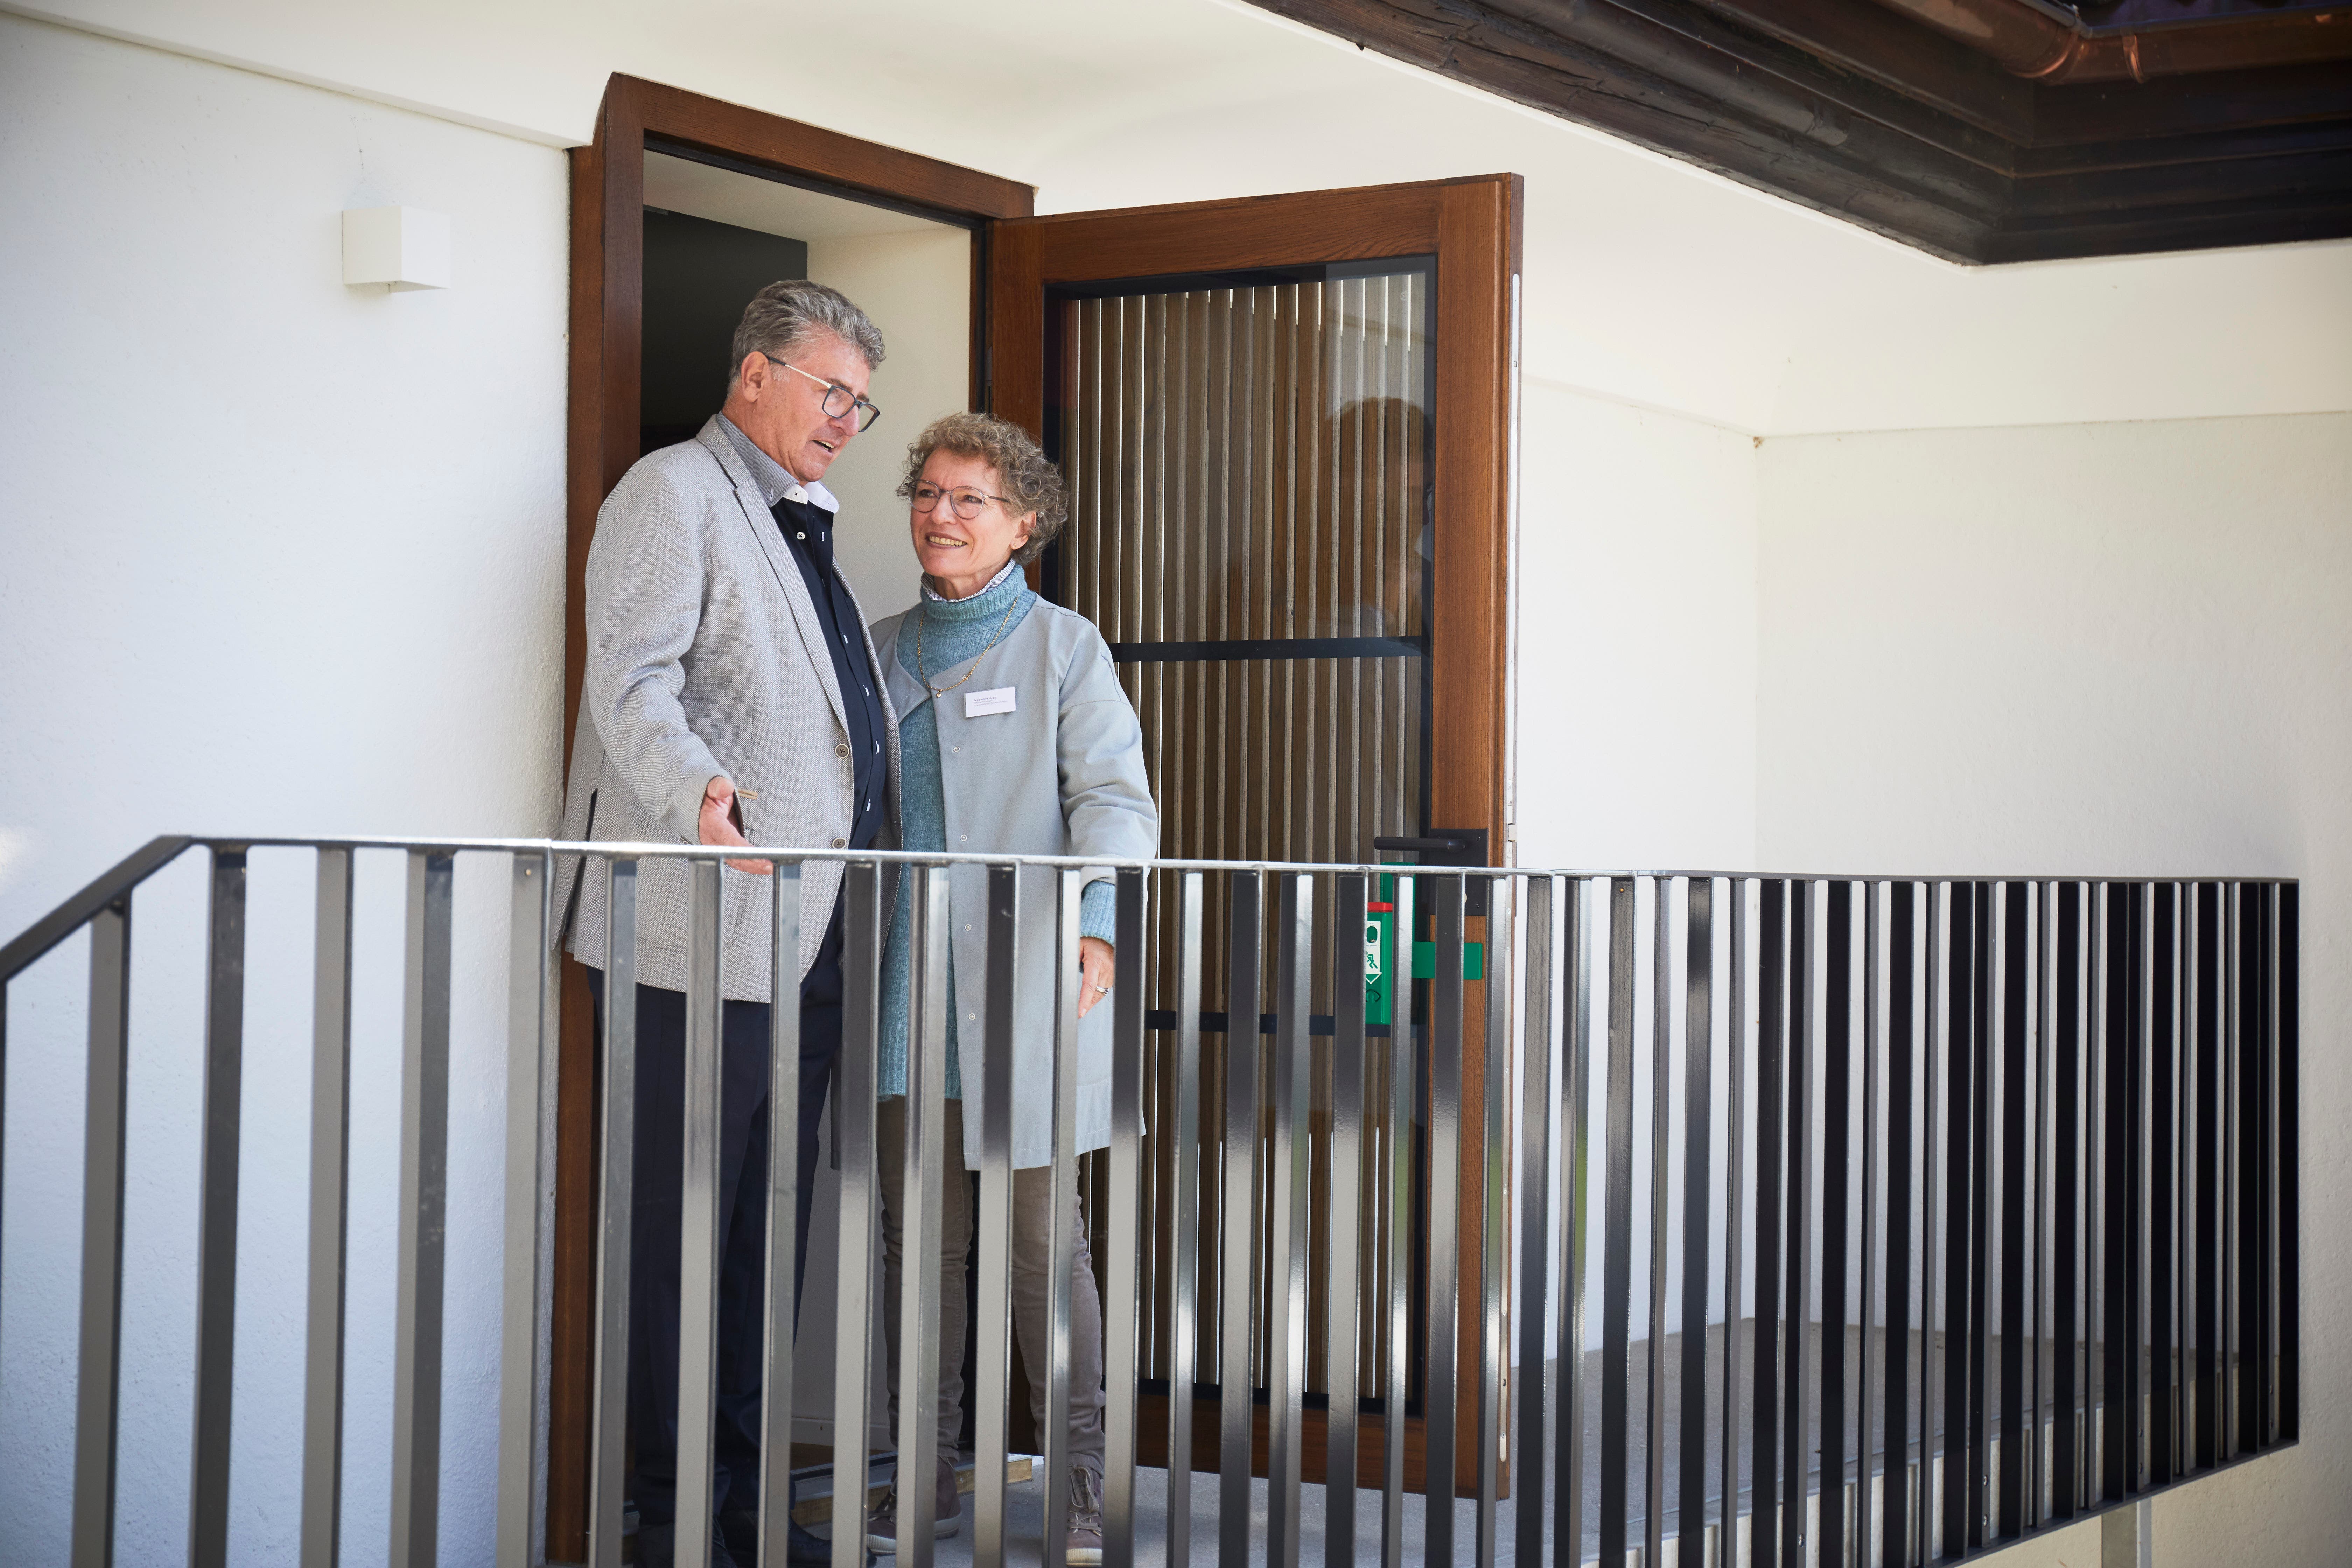 Ruedi von Ah ist der Präsident der Liberalen Baugenossenschaft Meggen, und Jacqueline Kopp ist von der Wohnbaugenossenschaft Meggen. Die beiden Genossenschaften haben das Gebäude im Baurecht für 100 Jahre übernommen.